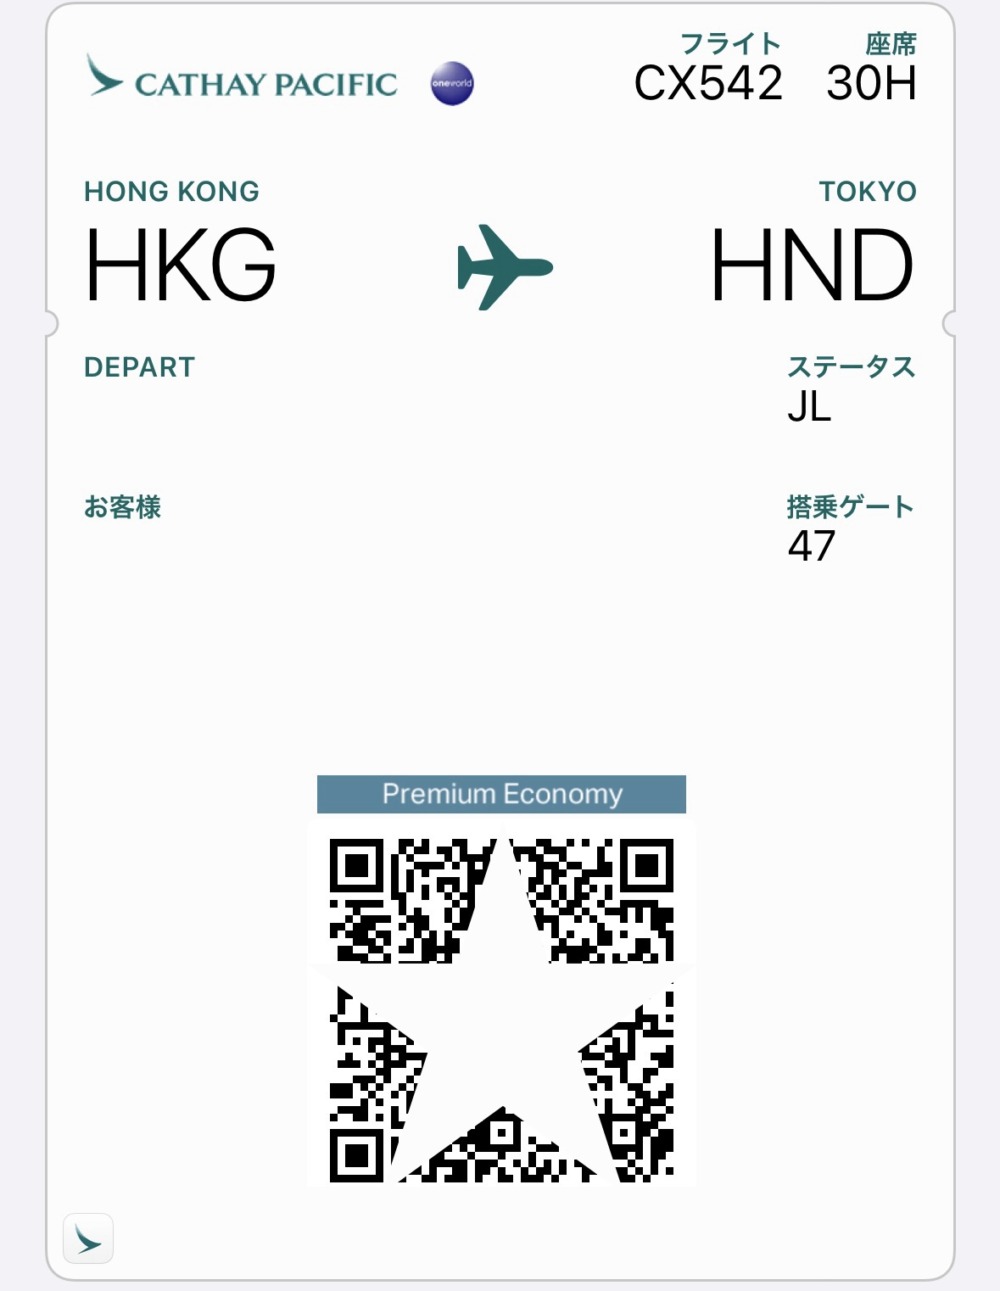 キャセイパシフィック航空プレミアムエコノミー搭乗記・アプリでオンラインチェックインが完了